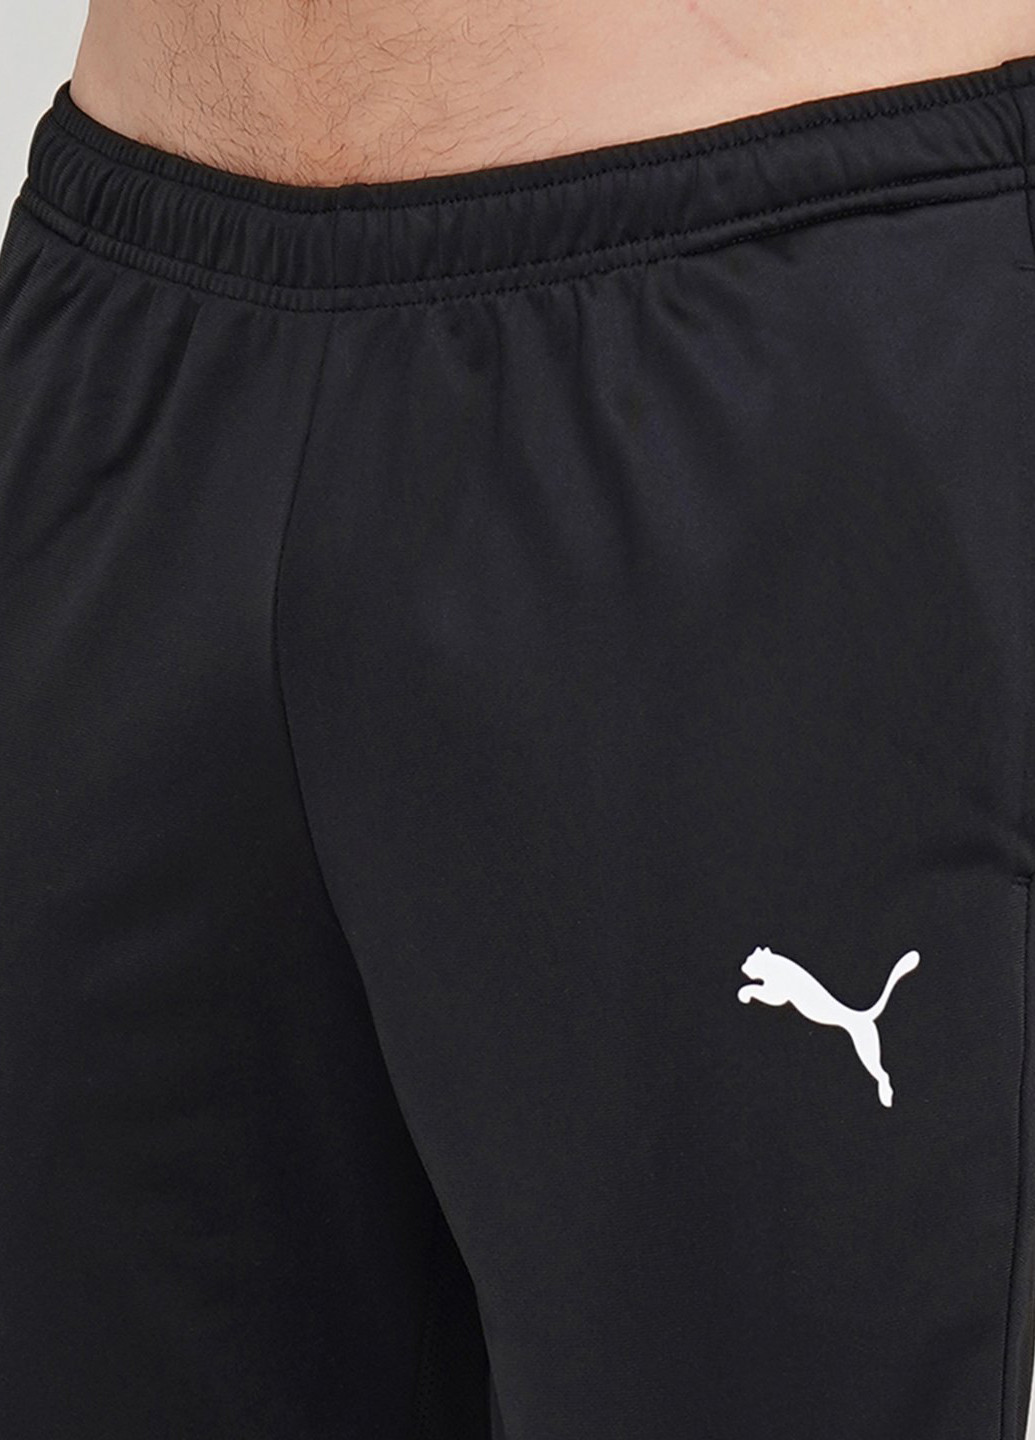 Черный демисезонный костюм (олимпийка, брюки) брючный Puma Ftblplay Tracksuit